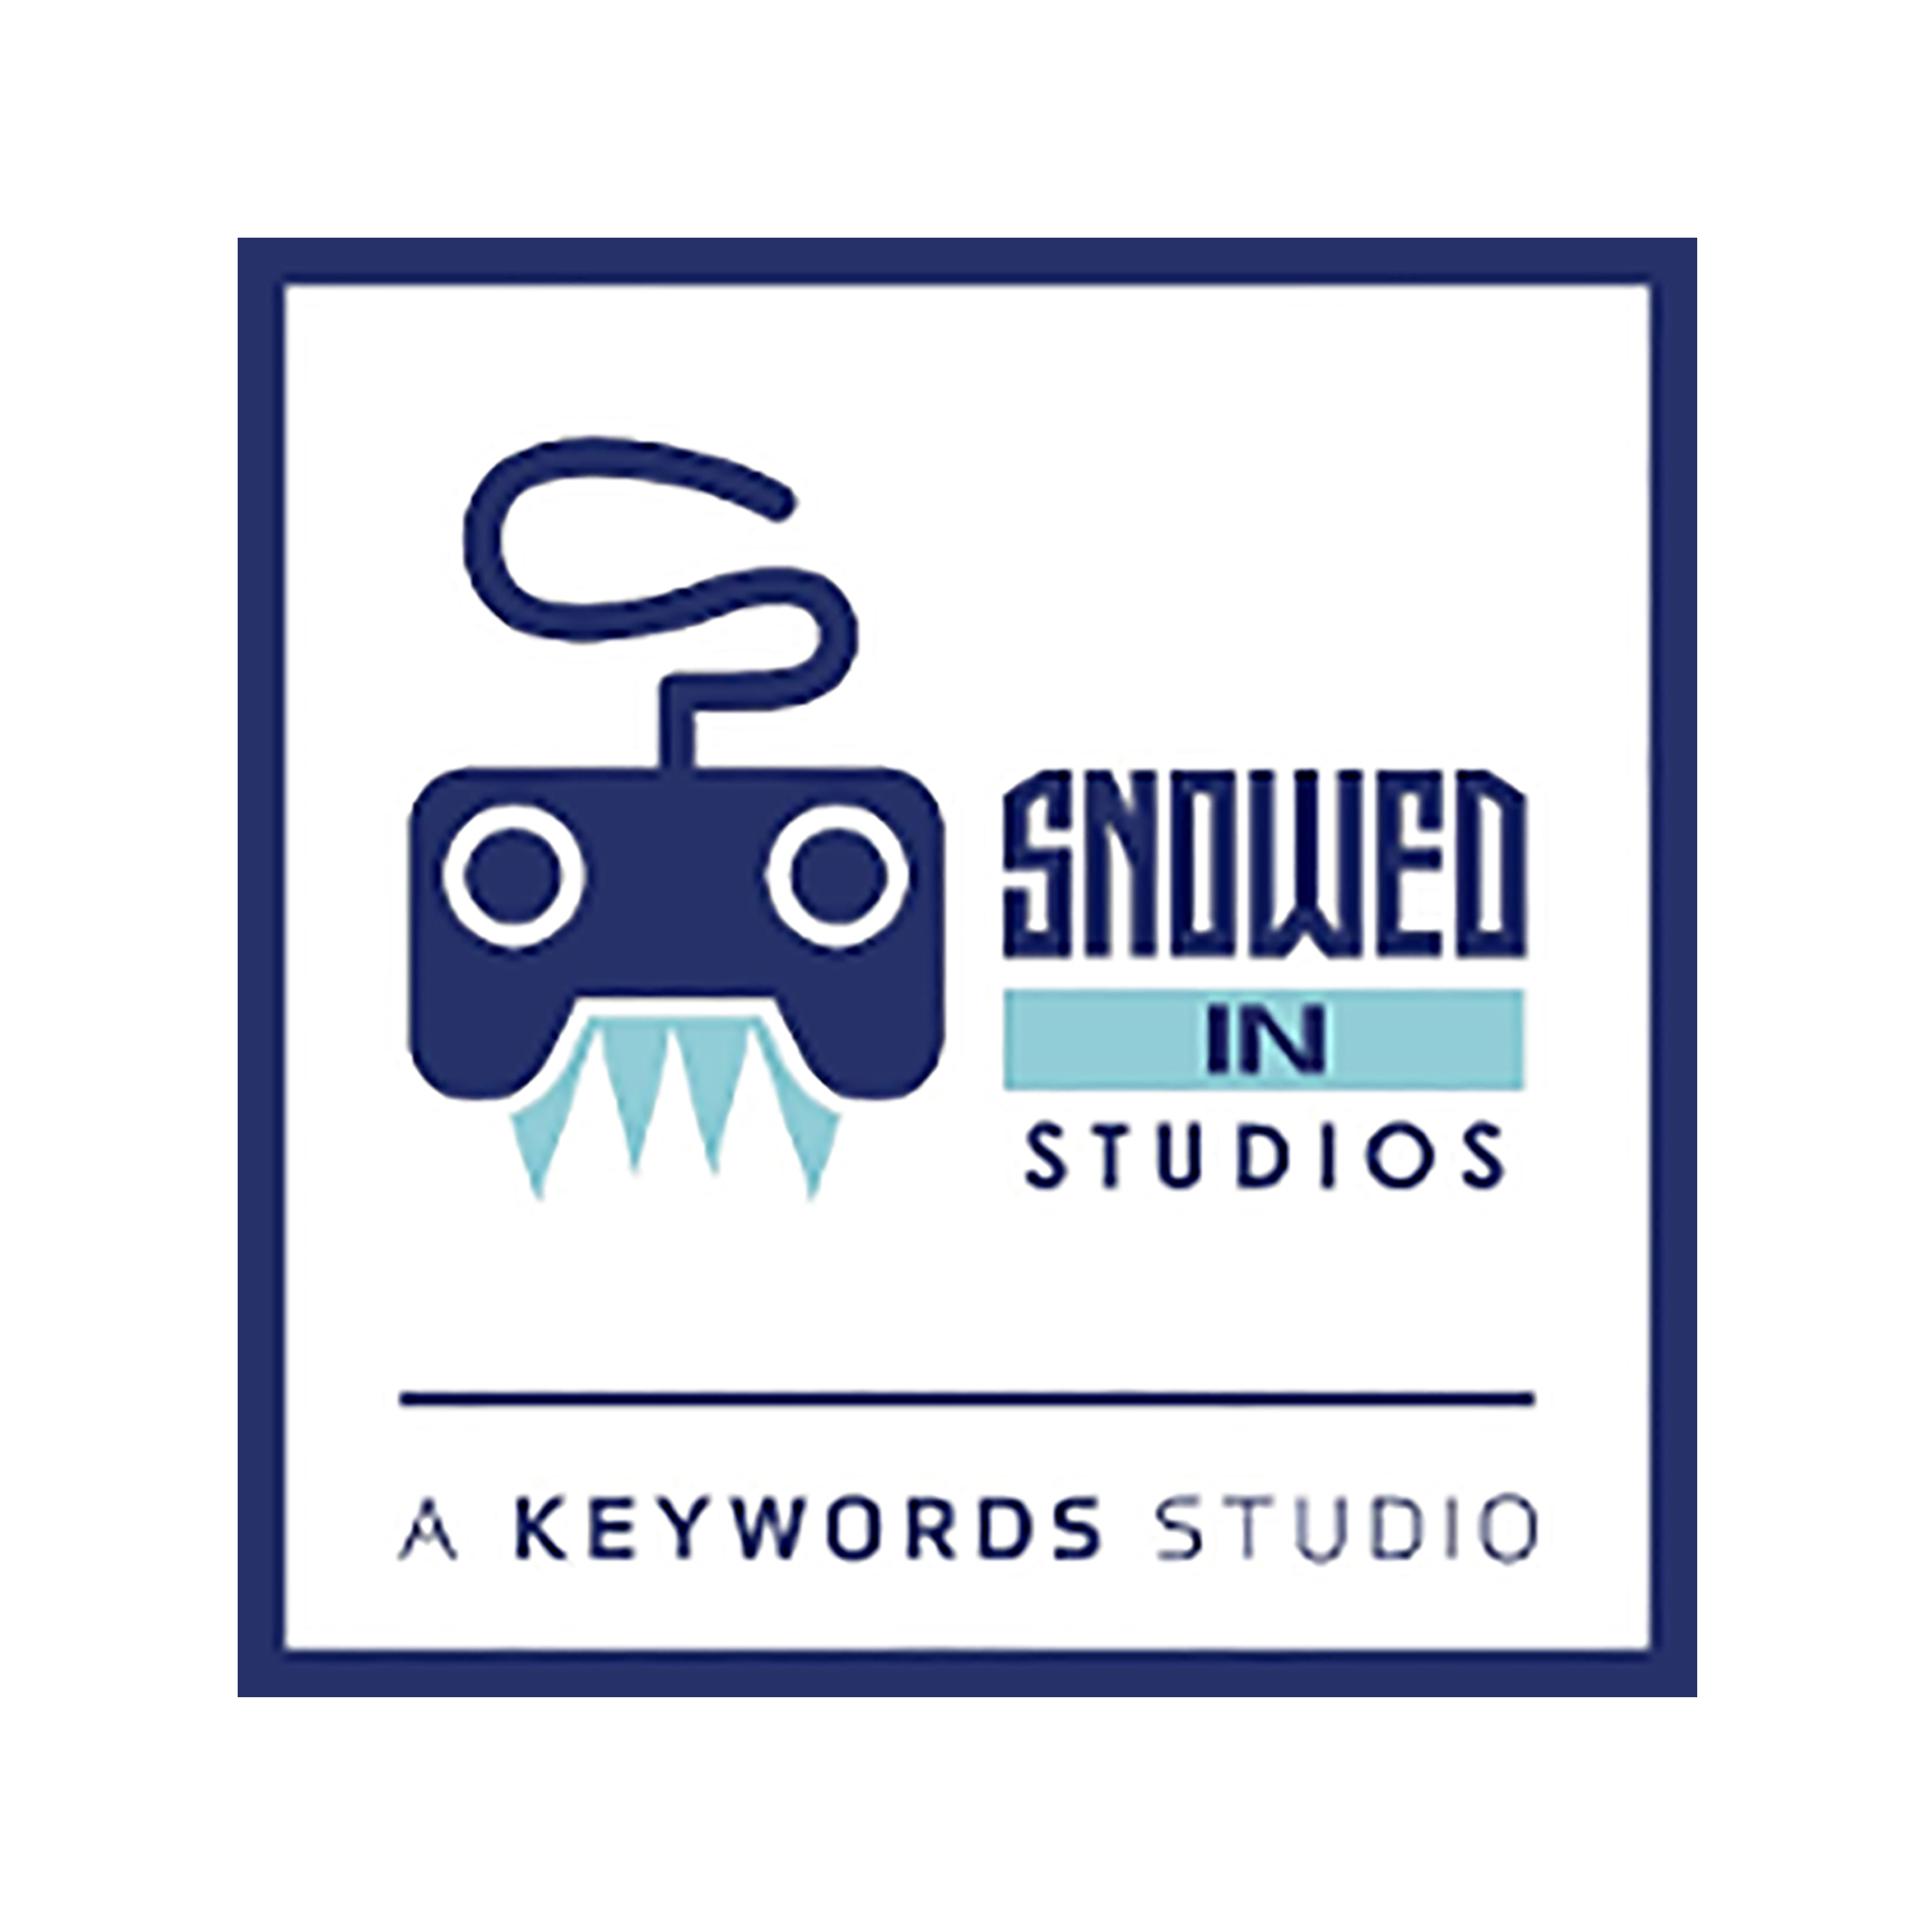 Snowed In Studios: A Keywords Studio logo